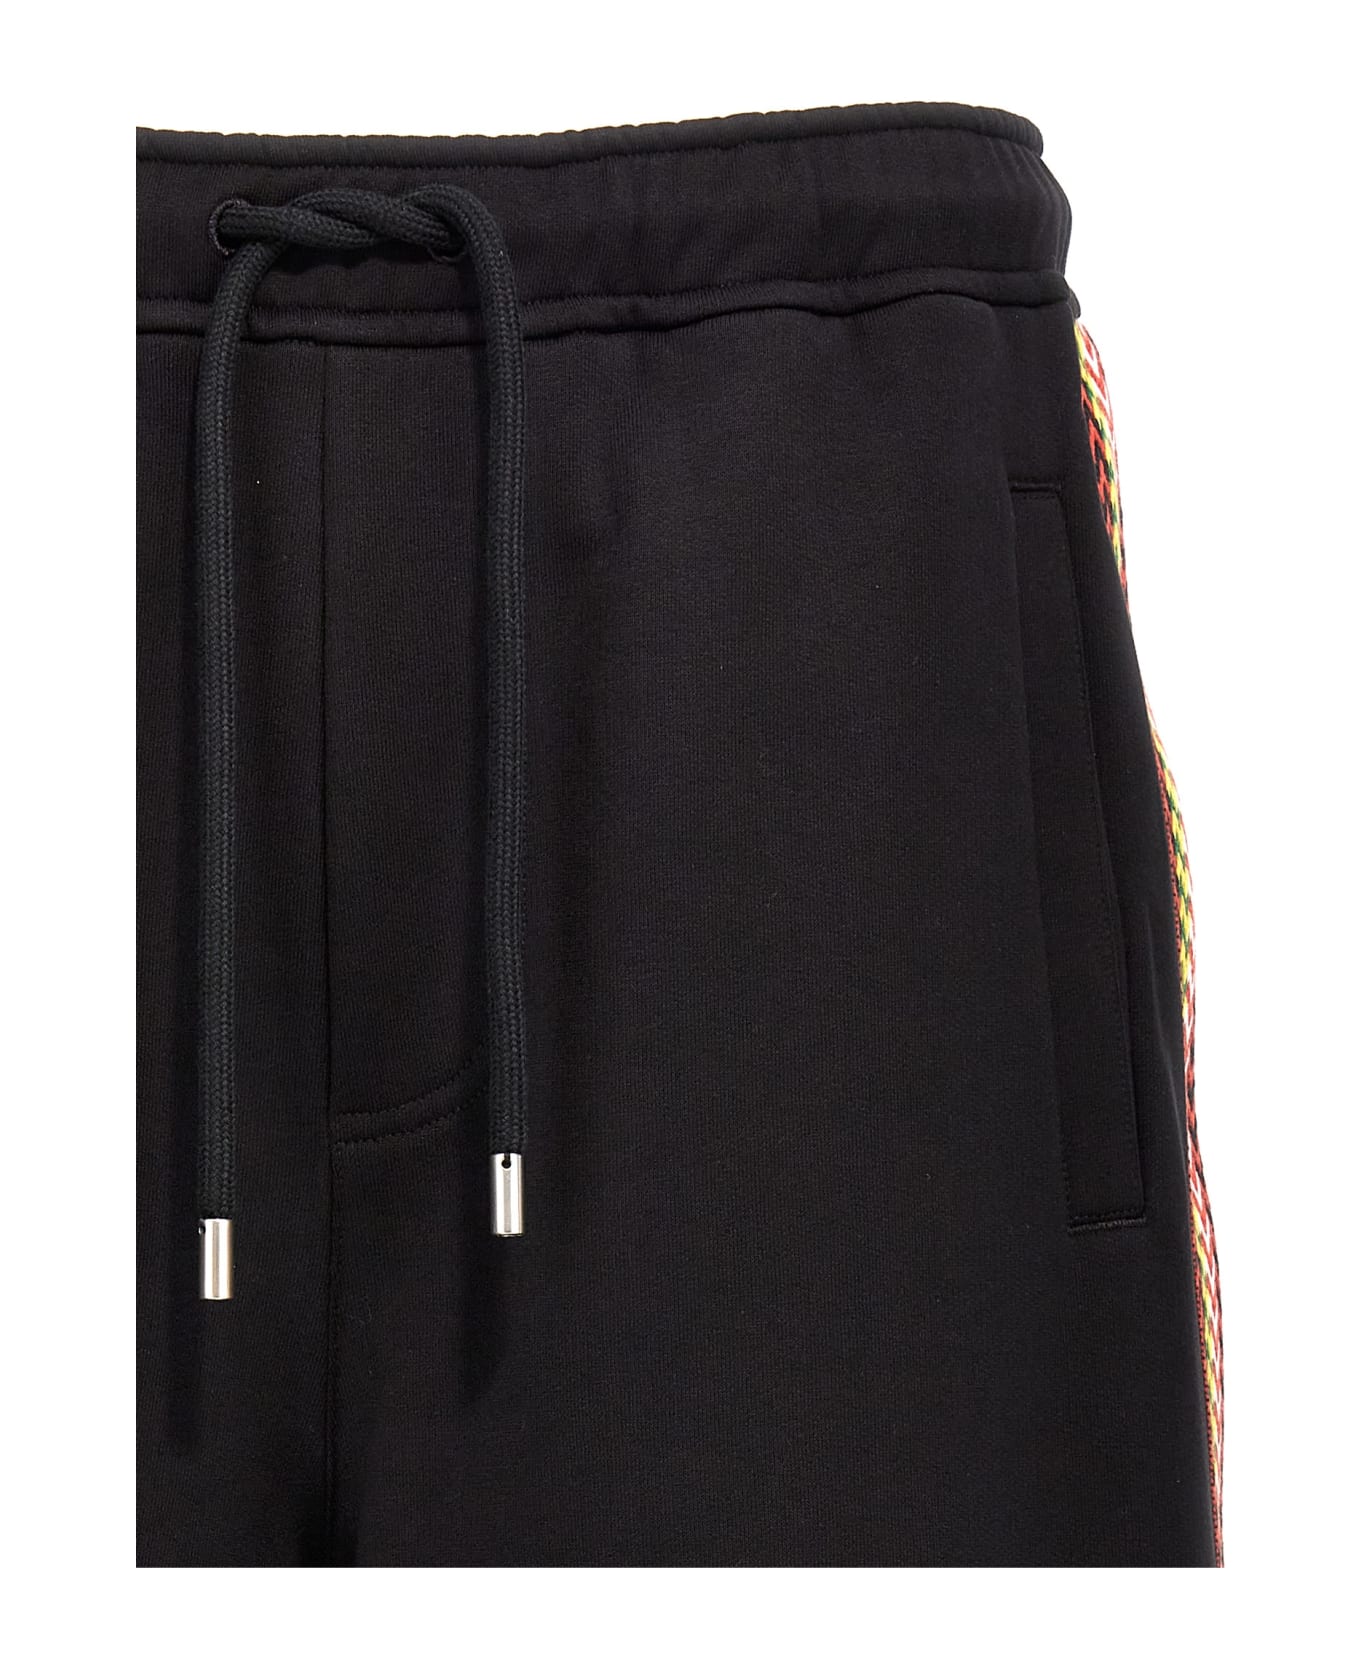 Lanvin 'side Curb' Bermuda Shorts - Nero ショートパンツ